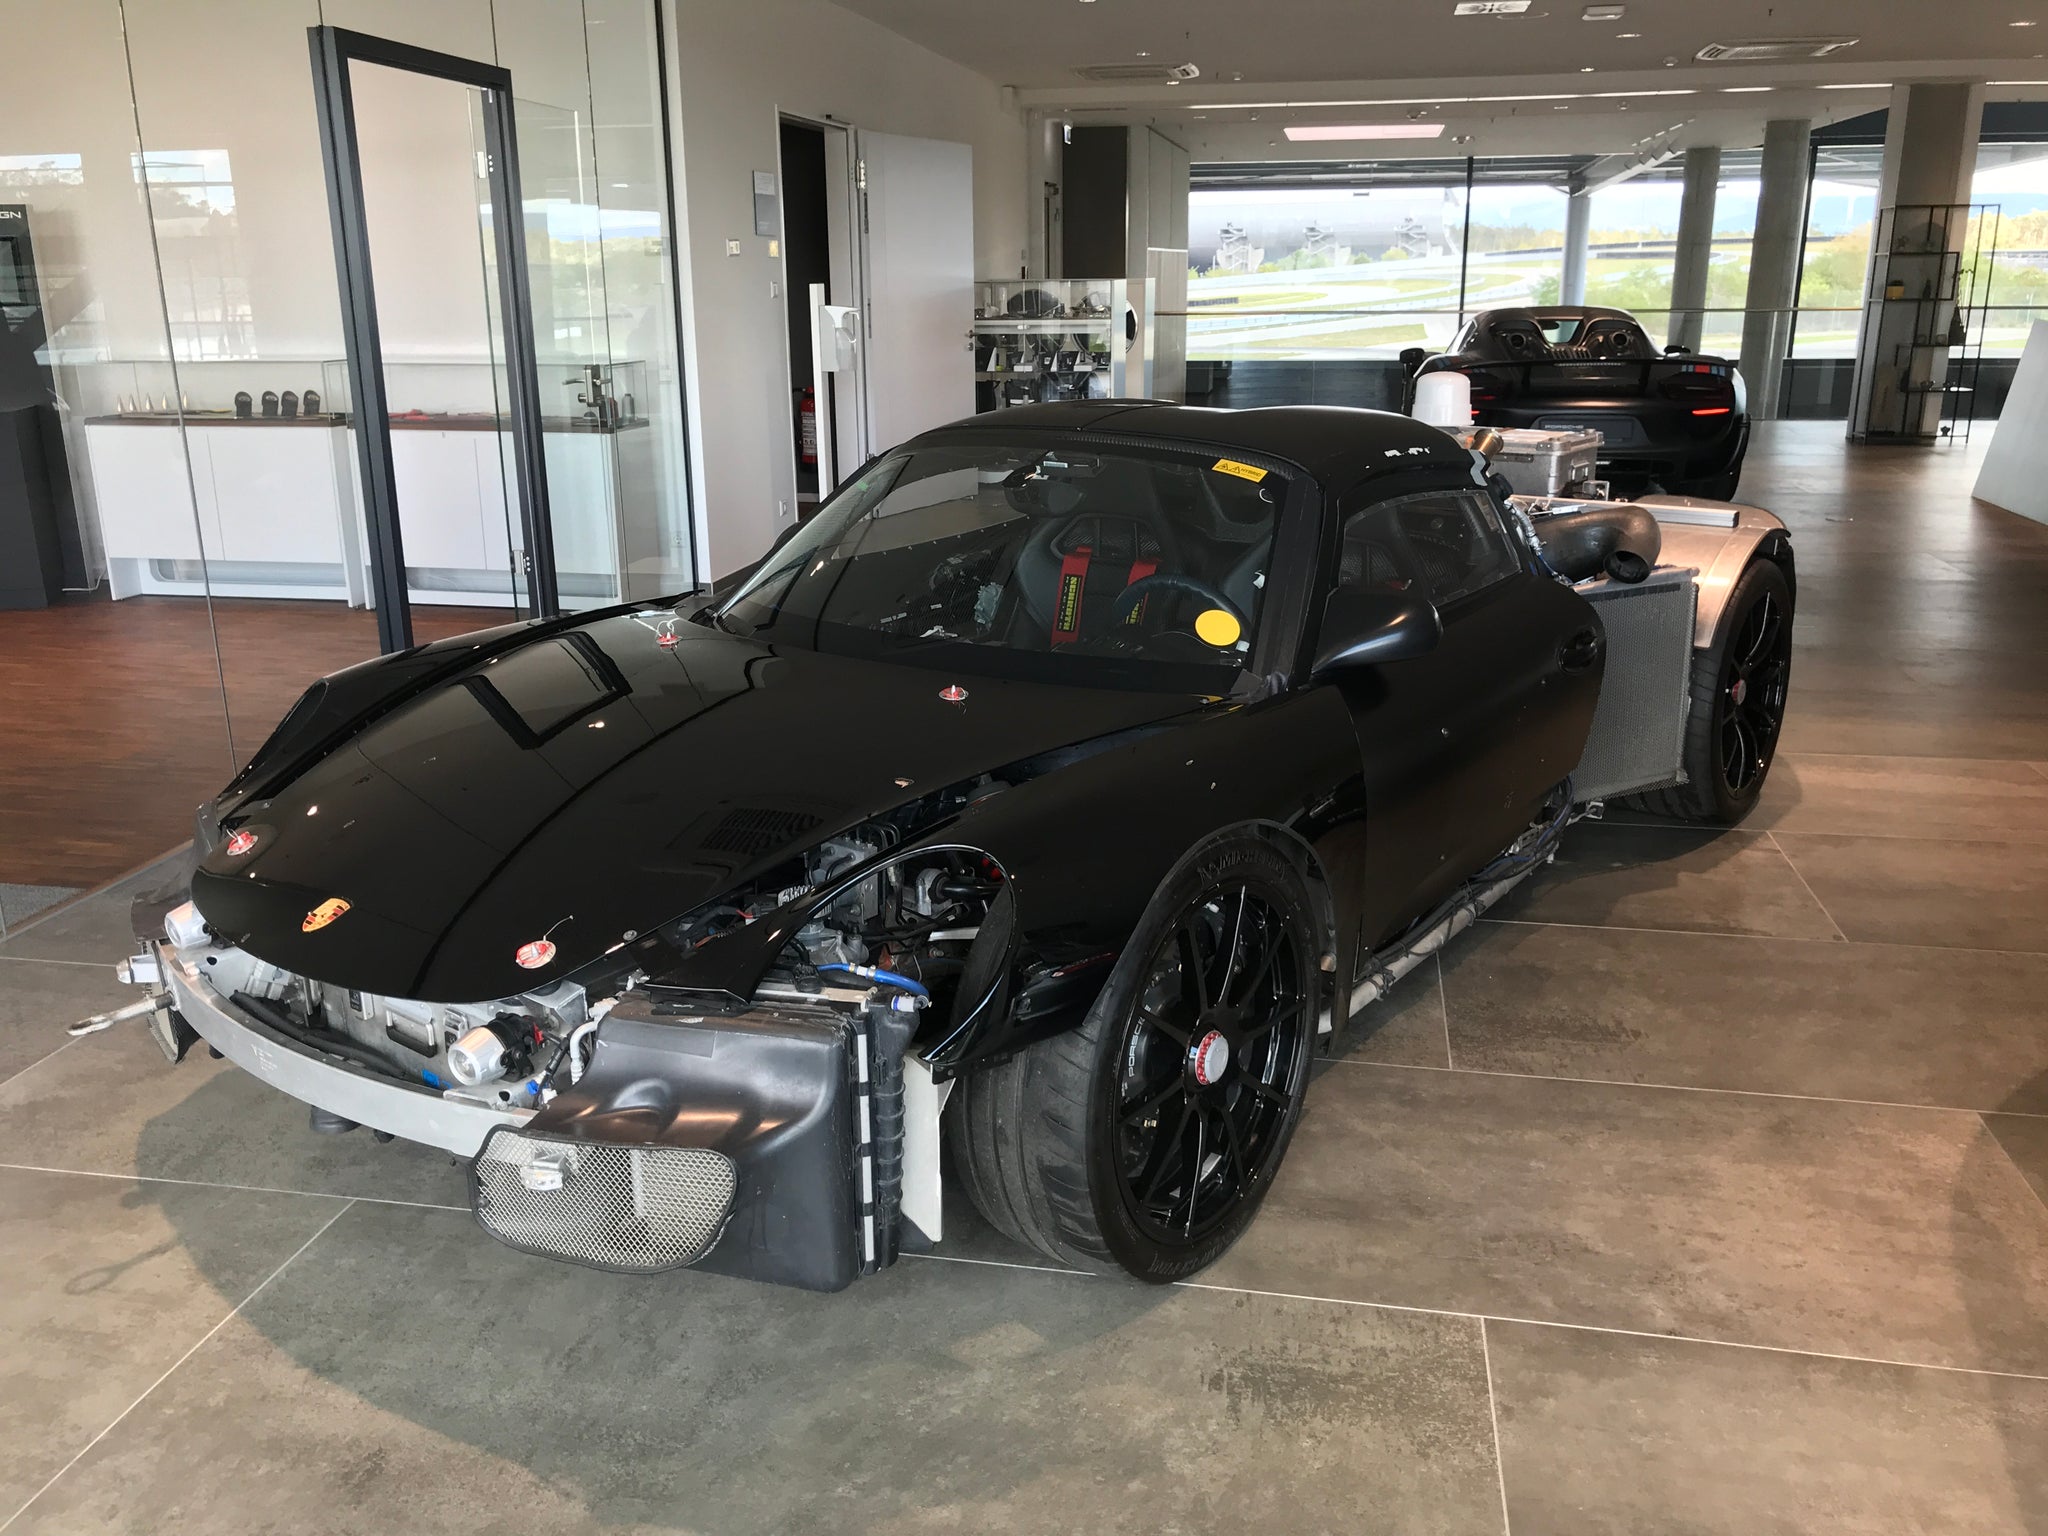 Porsche 918 Test Mule at Porsche Experience Centre Hockenheimring